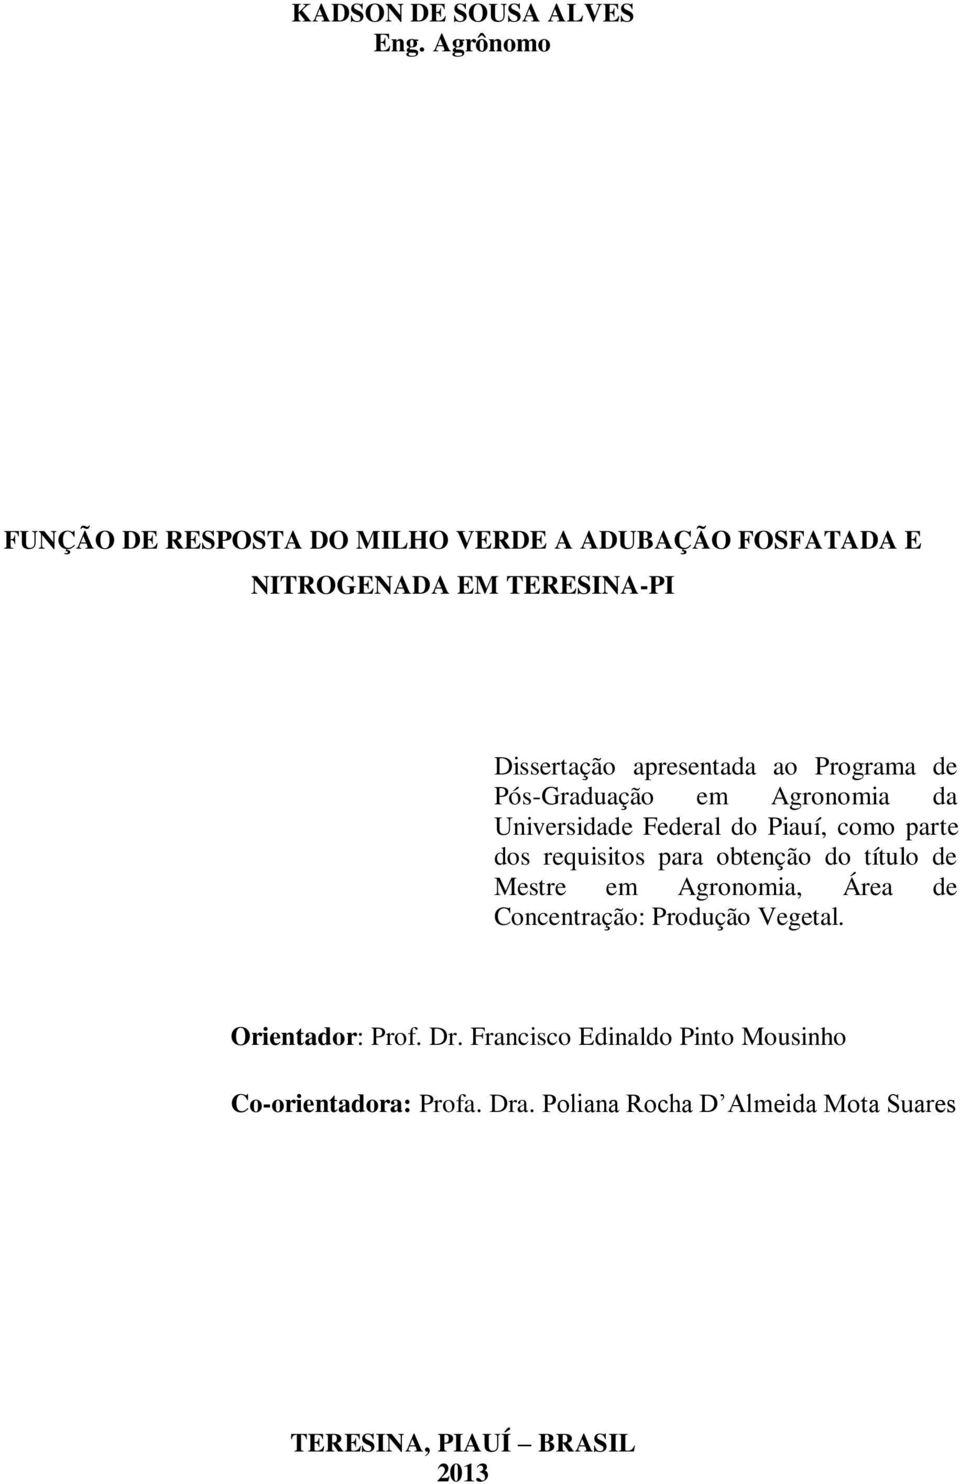 Programa de Pós-Graduação em Agronomia da Universidade Federal do Piauí, como parte dos requisitos para obtenção do